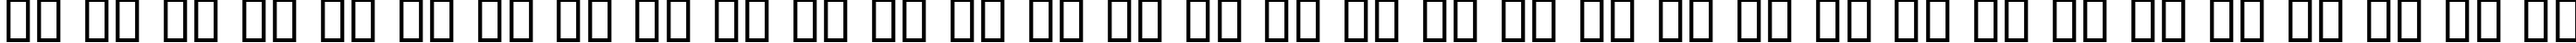 Пример написания русского алфавита шрифтом Chiller